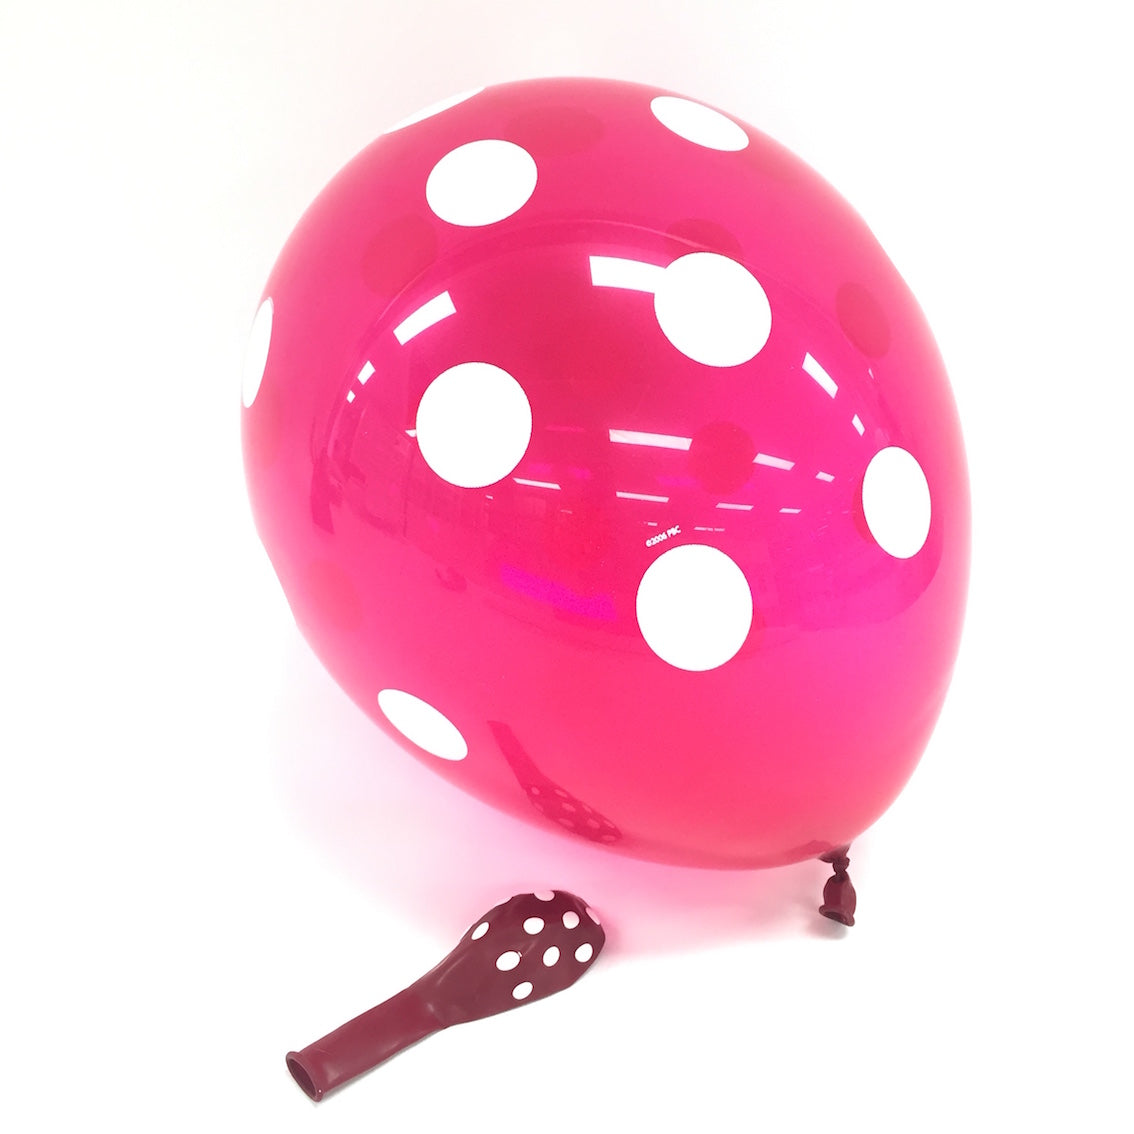 Ballon-set pink mit weissen Punkten, transparent